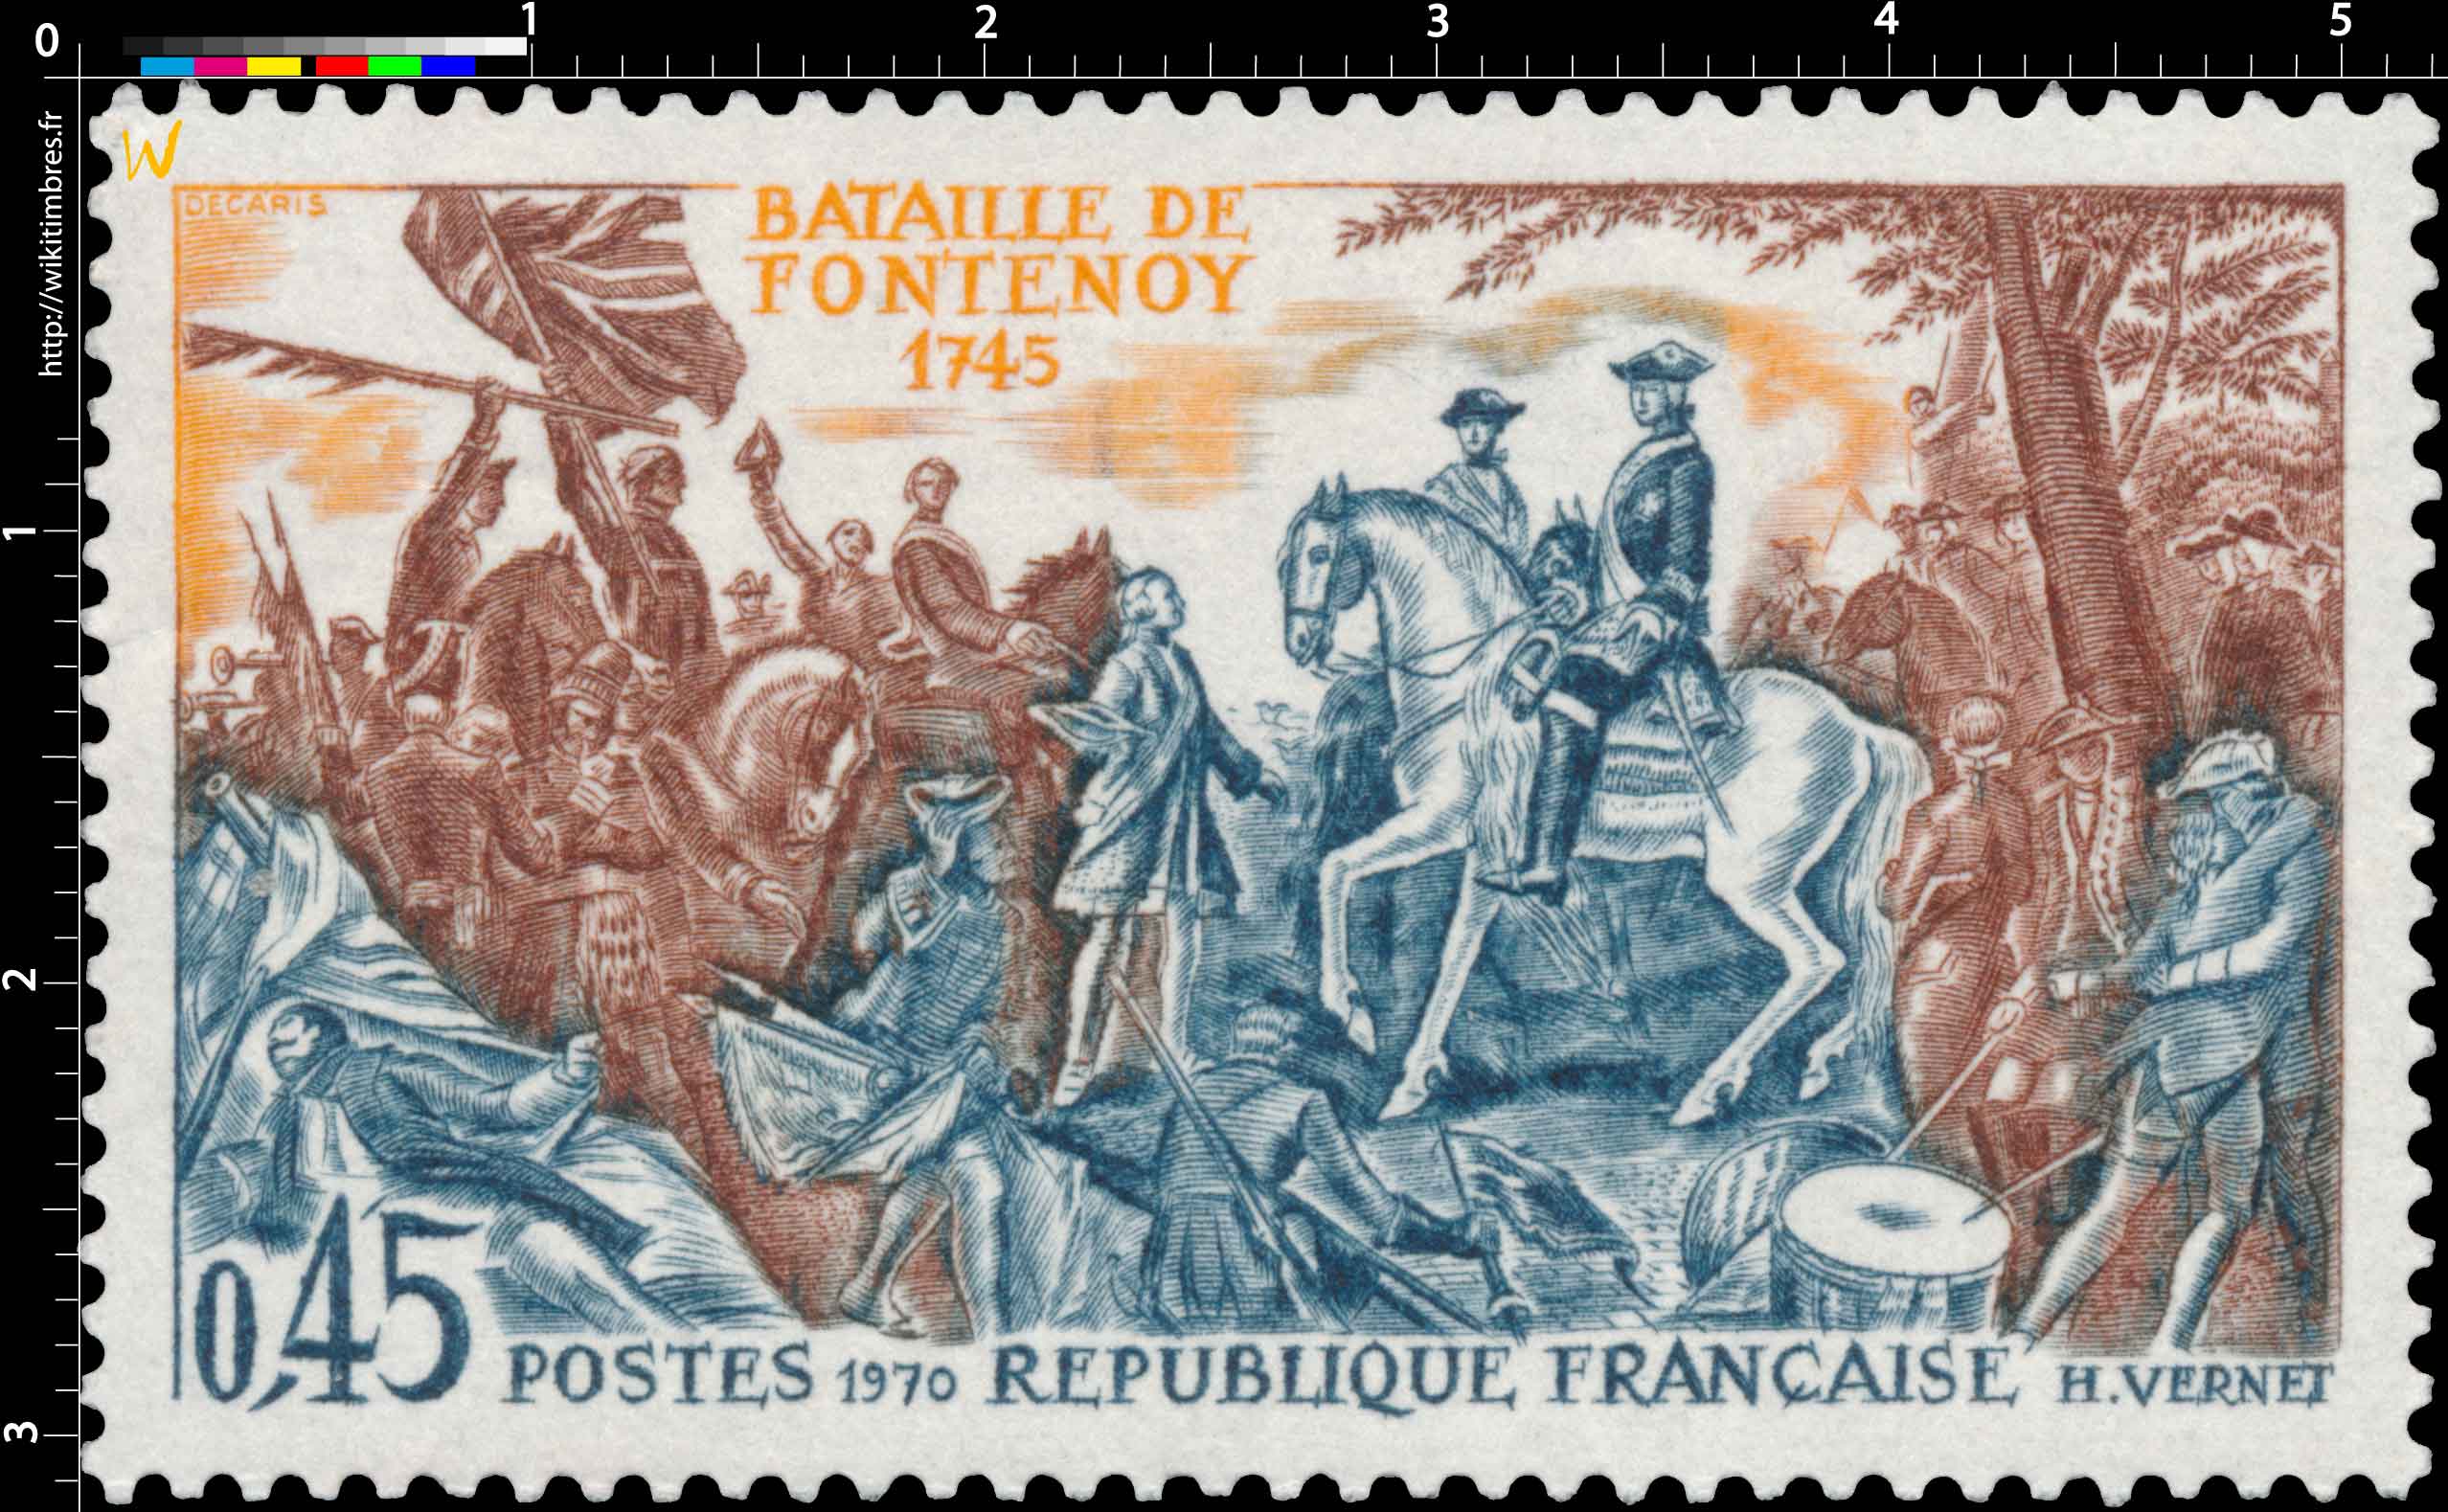 1970 BATAILLE DE FONTENOY 1745